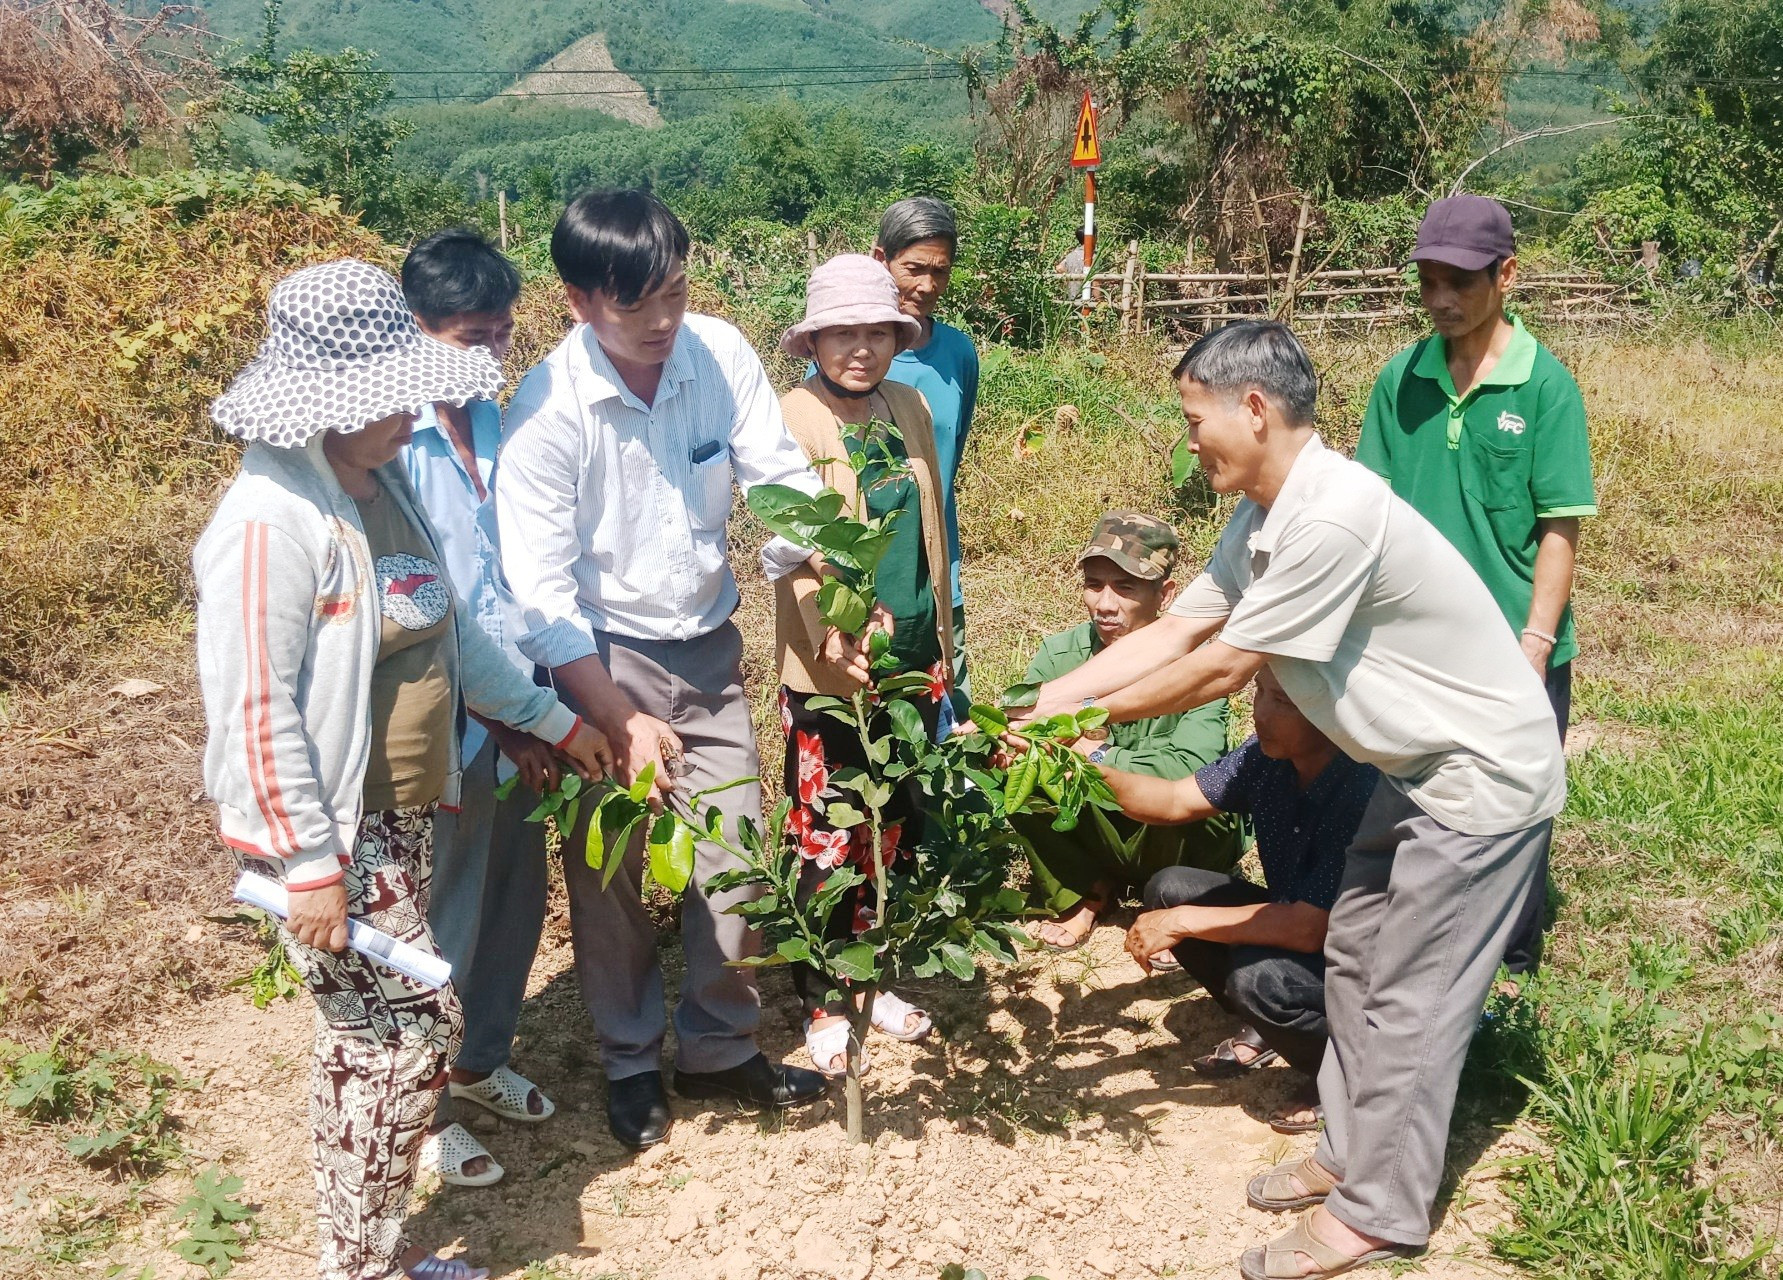 Cán bộ kỹ thuật nông nghiệp huyện Nông Sơn hướng dẫn người dân cách trồng, chăm sóc cây ăn quả. Ảnh: S.A